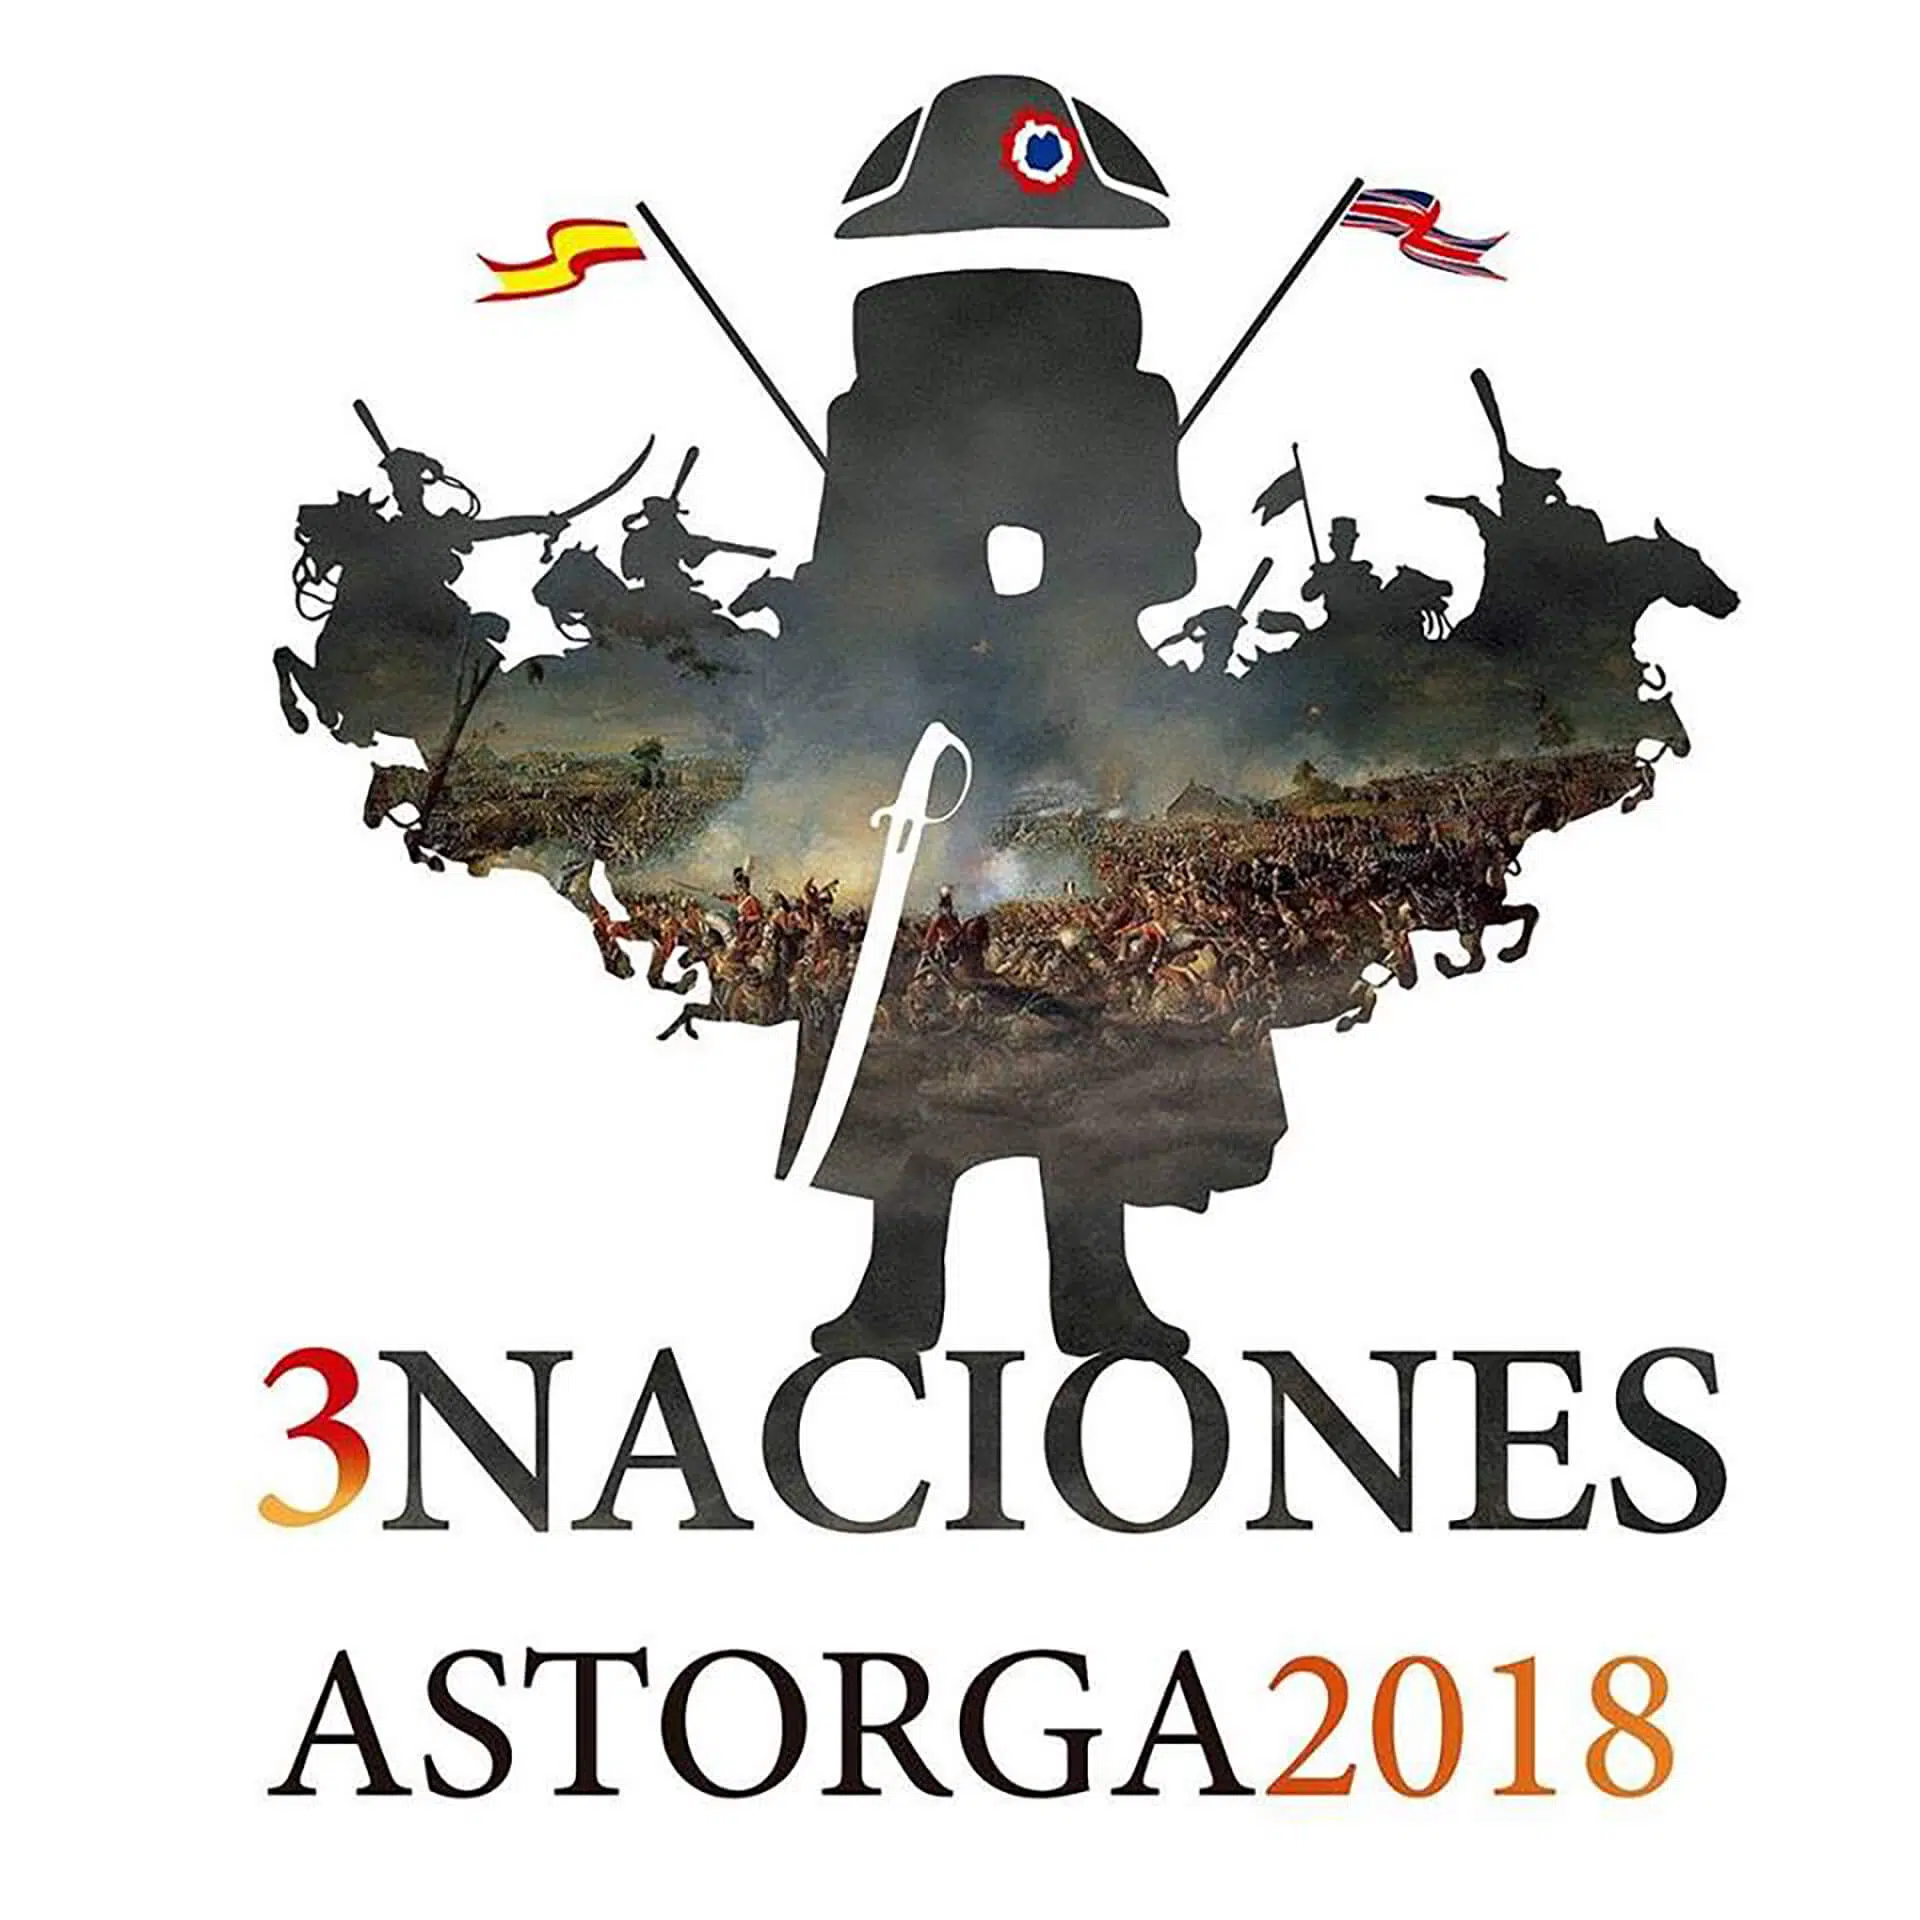 Astorga se rinde ante Tres naciones